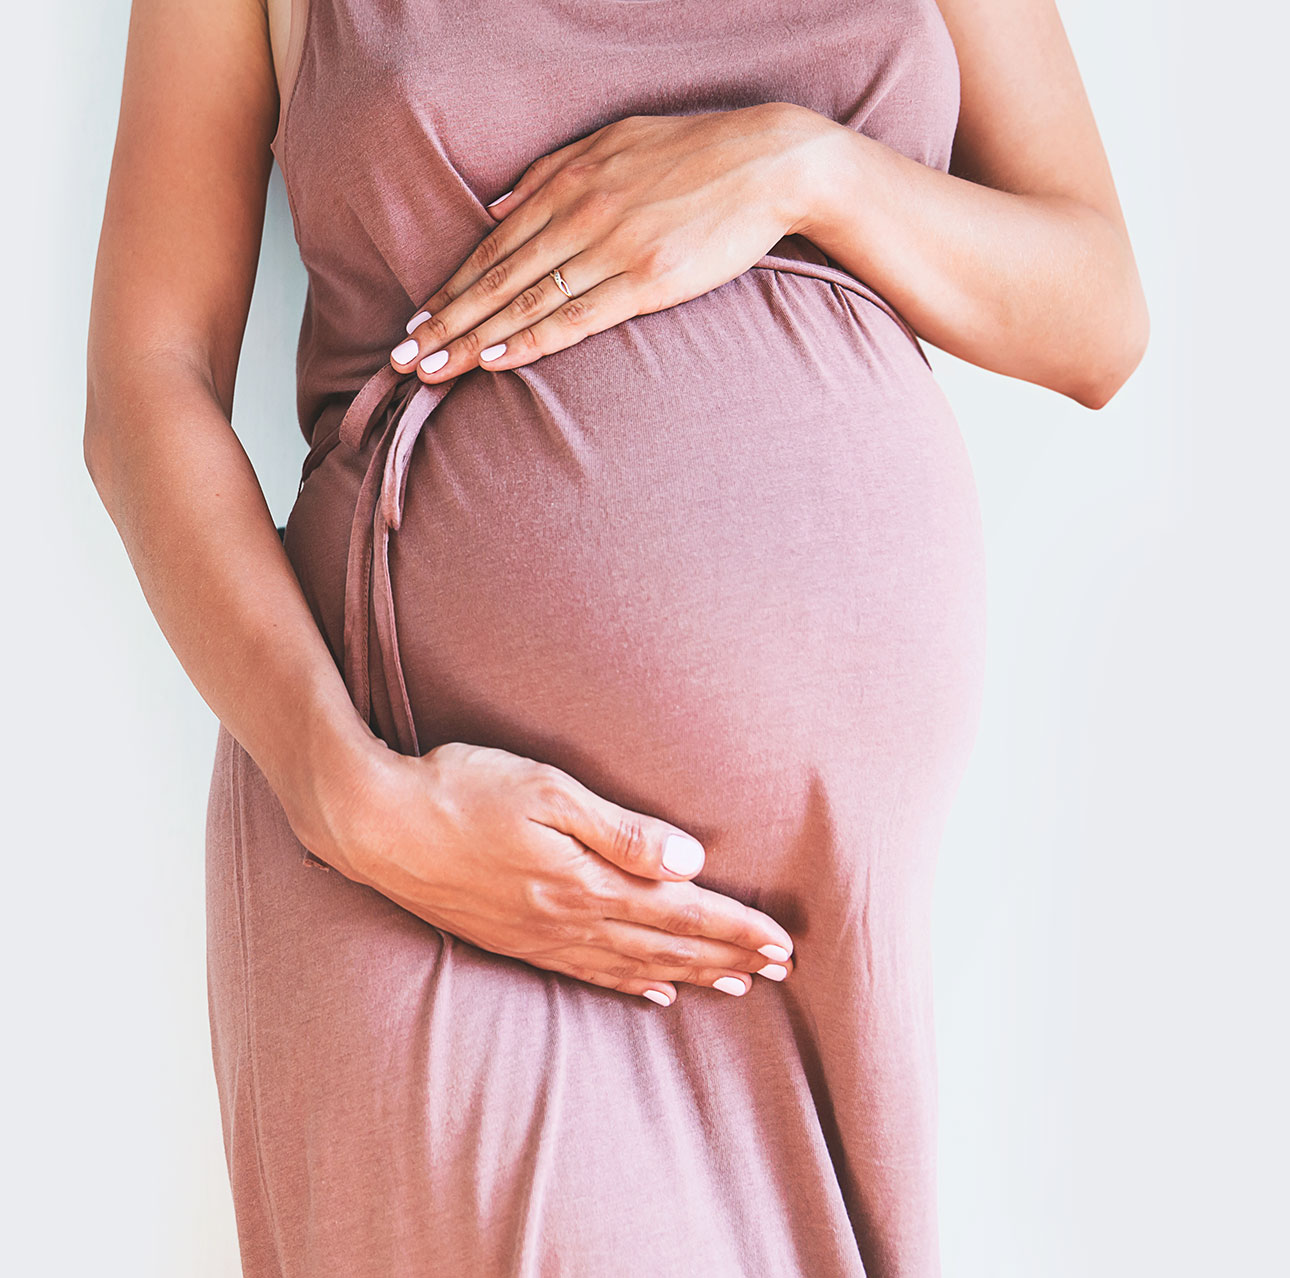 Surrogacy Contract